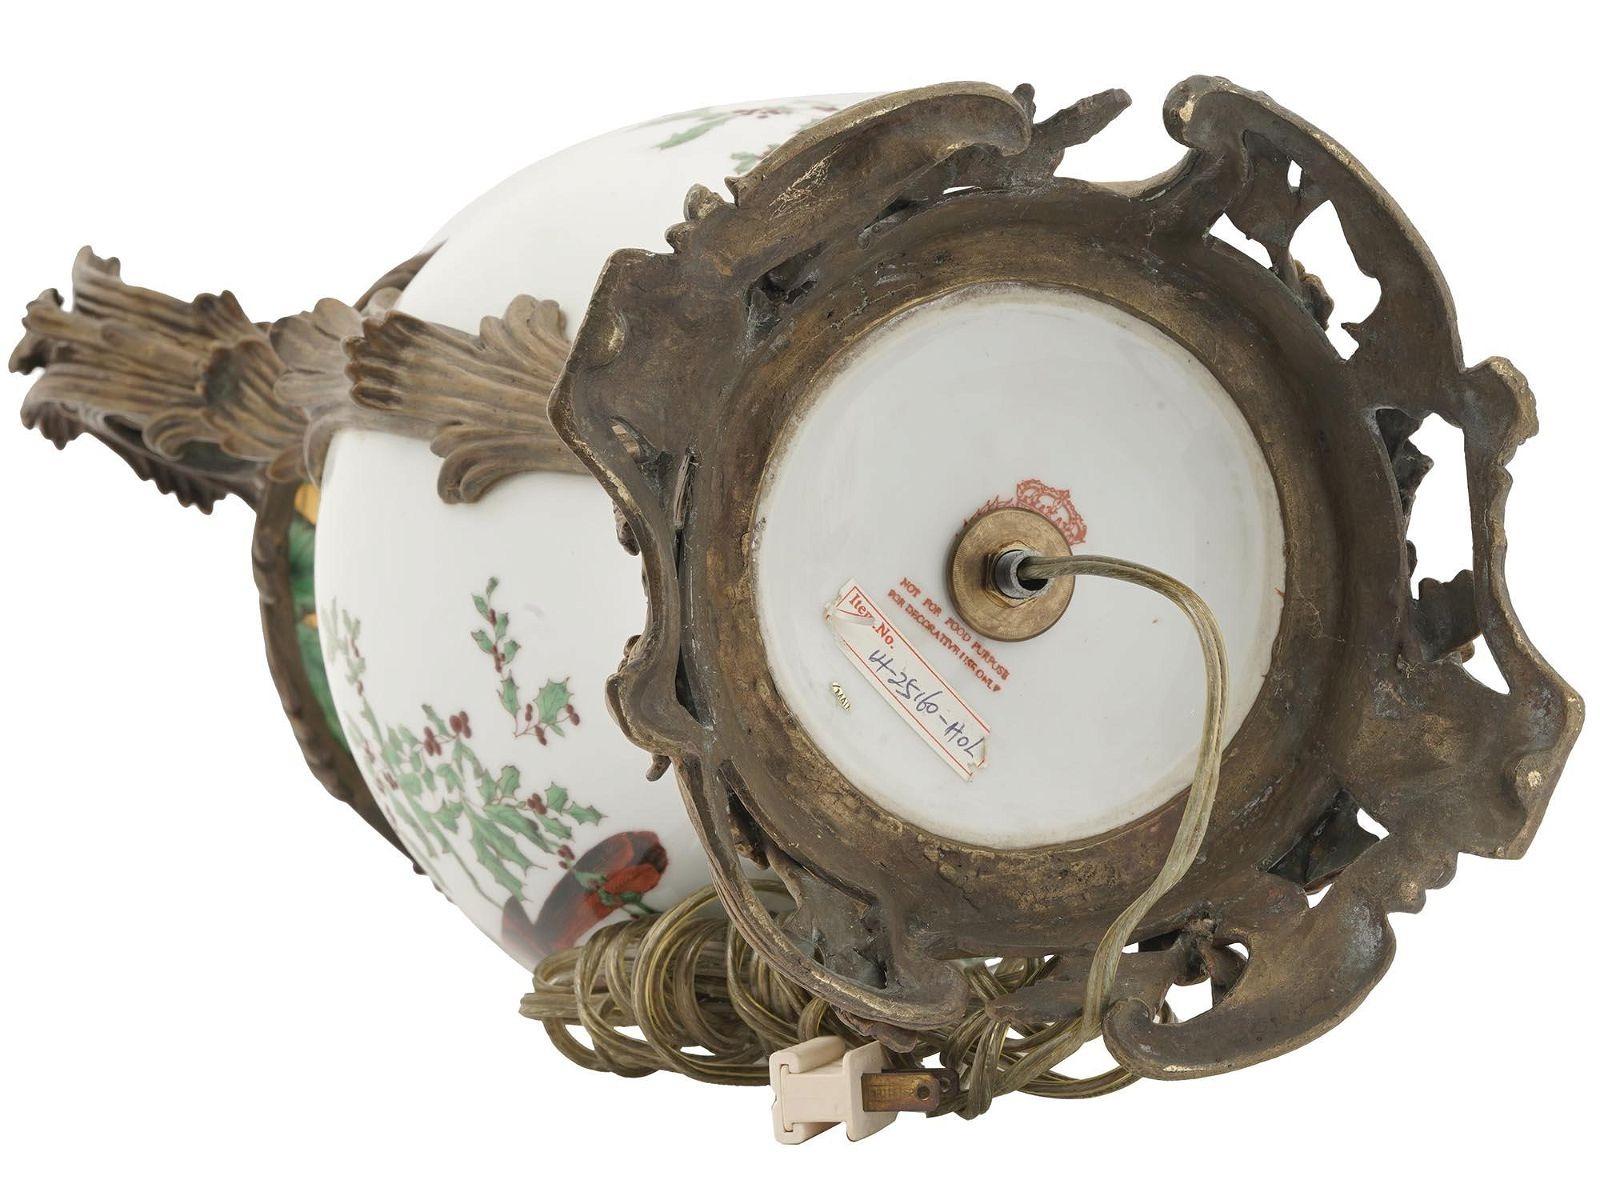 Feine Porzellanvase mit aufwändigen, blattförmigen Bronzebeschlägen im Louis-XV-Stil mit fein gemalten Vögeln mit roten Federn, die auf Stechpalmenzweigen mit Beeren sitzen,  und wiederholtes grünes Blattmotiv mit Vergoldung am oberen und unteren